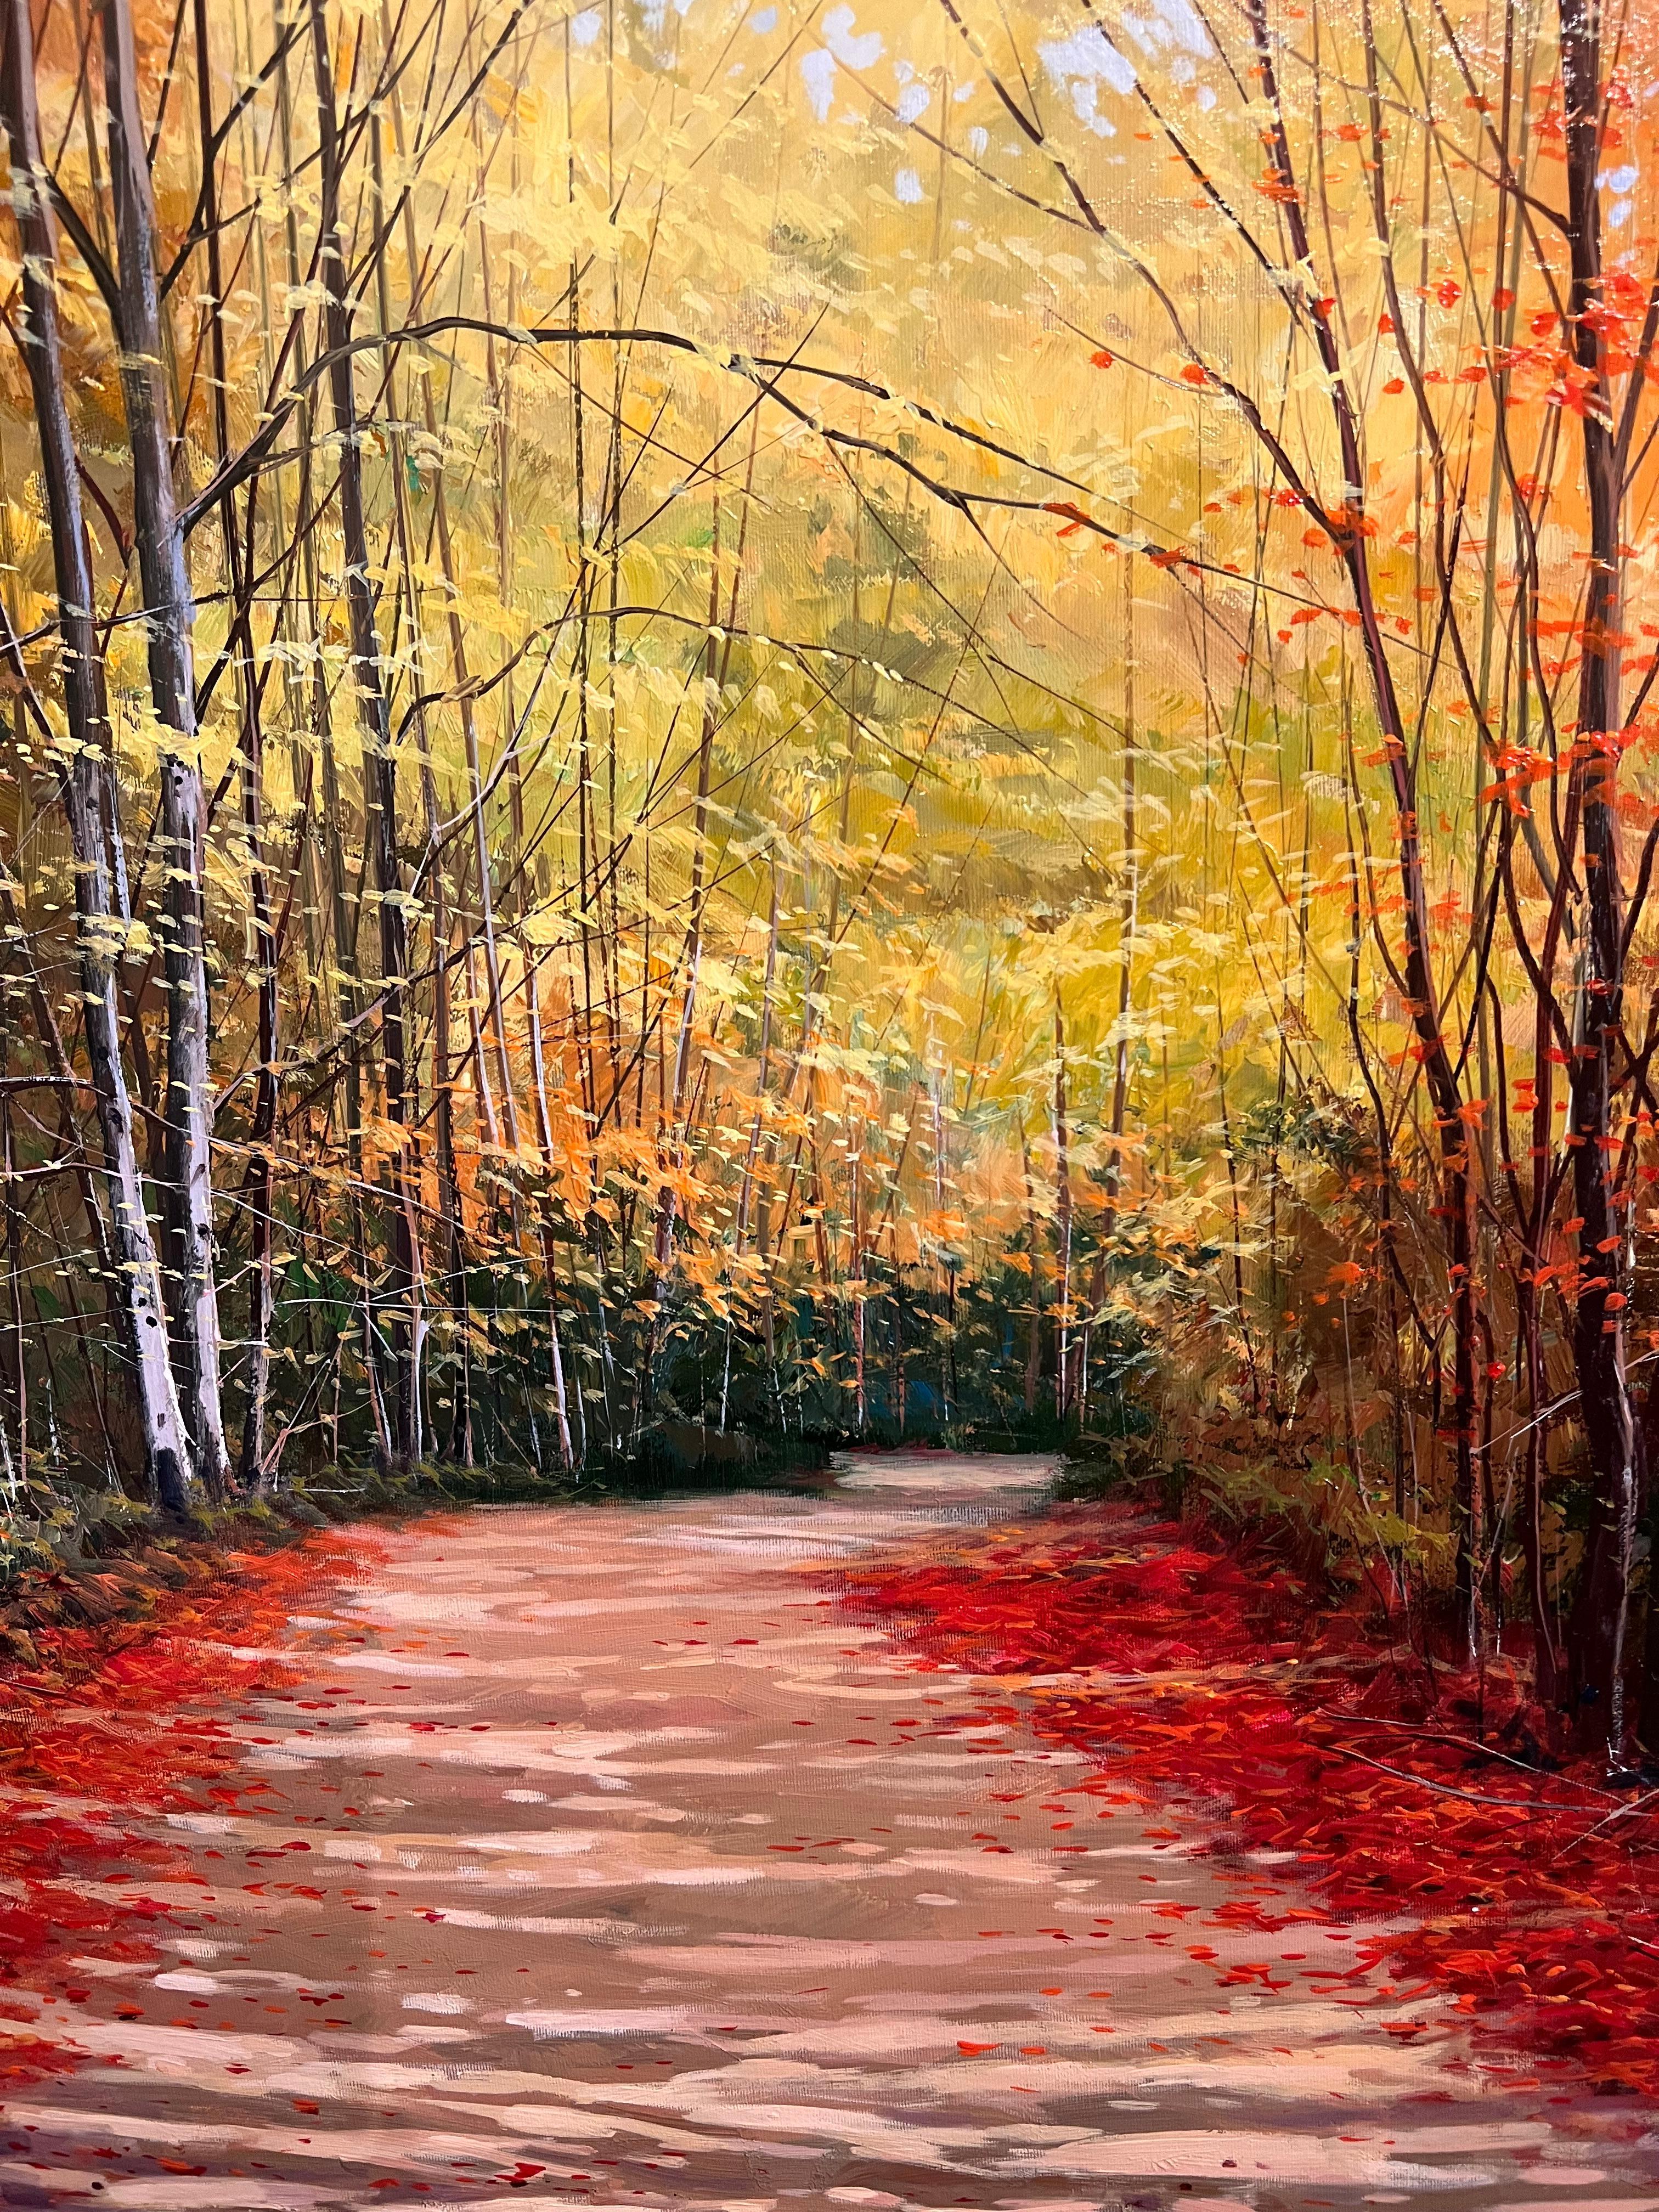 Paseo por el bosque (Marche dans la forêt) - Impressionnisme Painting par Miguel Peidro